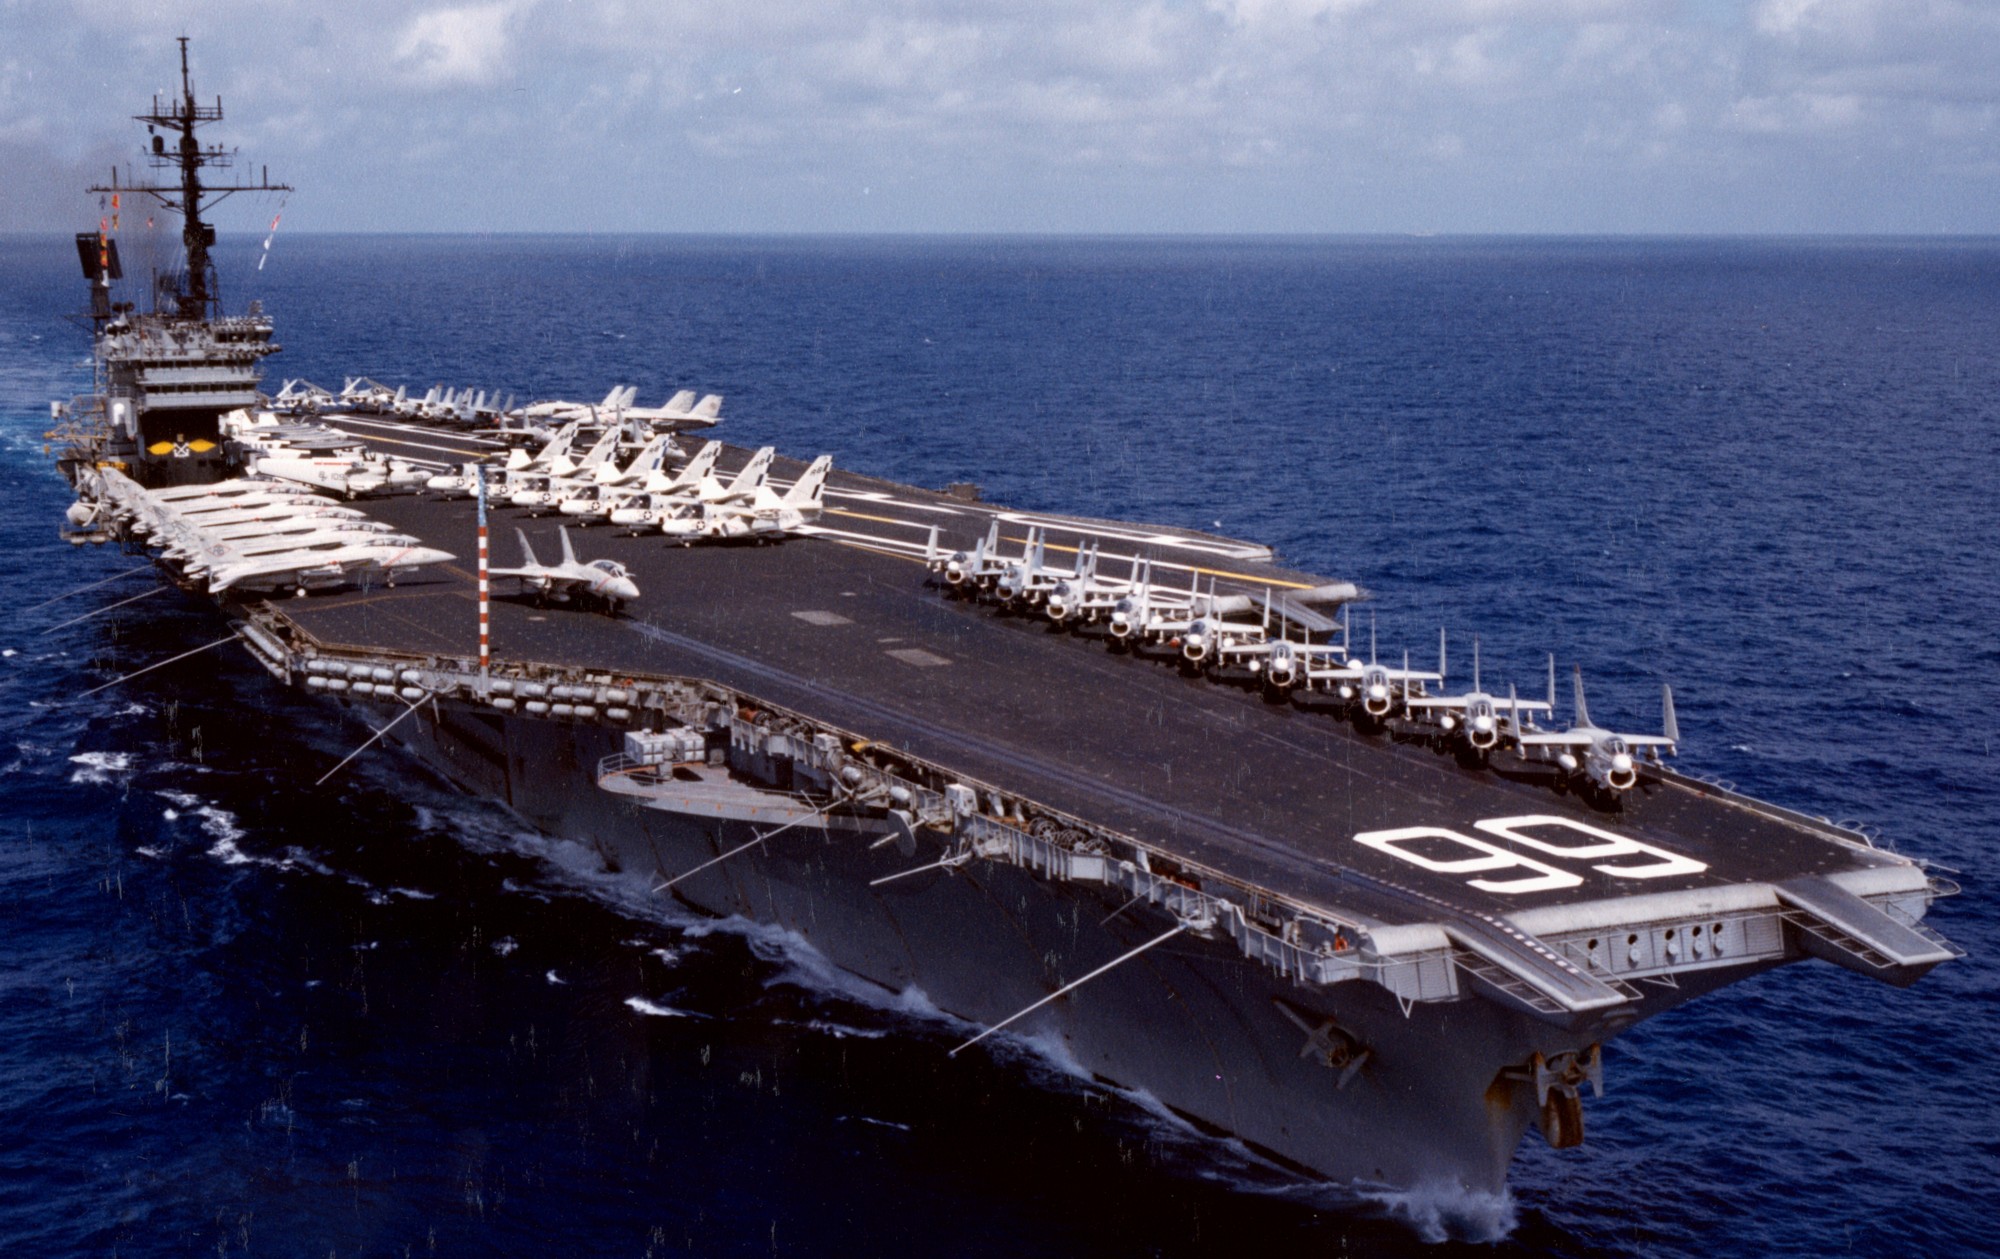 cv-66 uss america kitty hawk class aircraft carrier air wing cvw-1 us navy 67